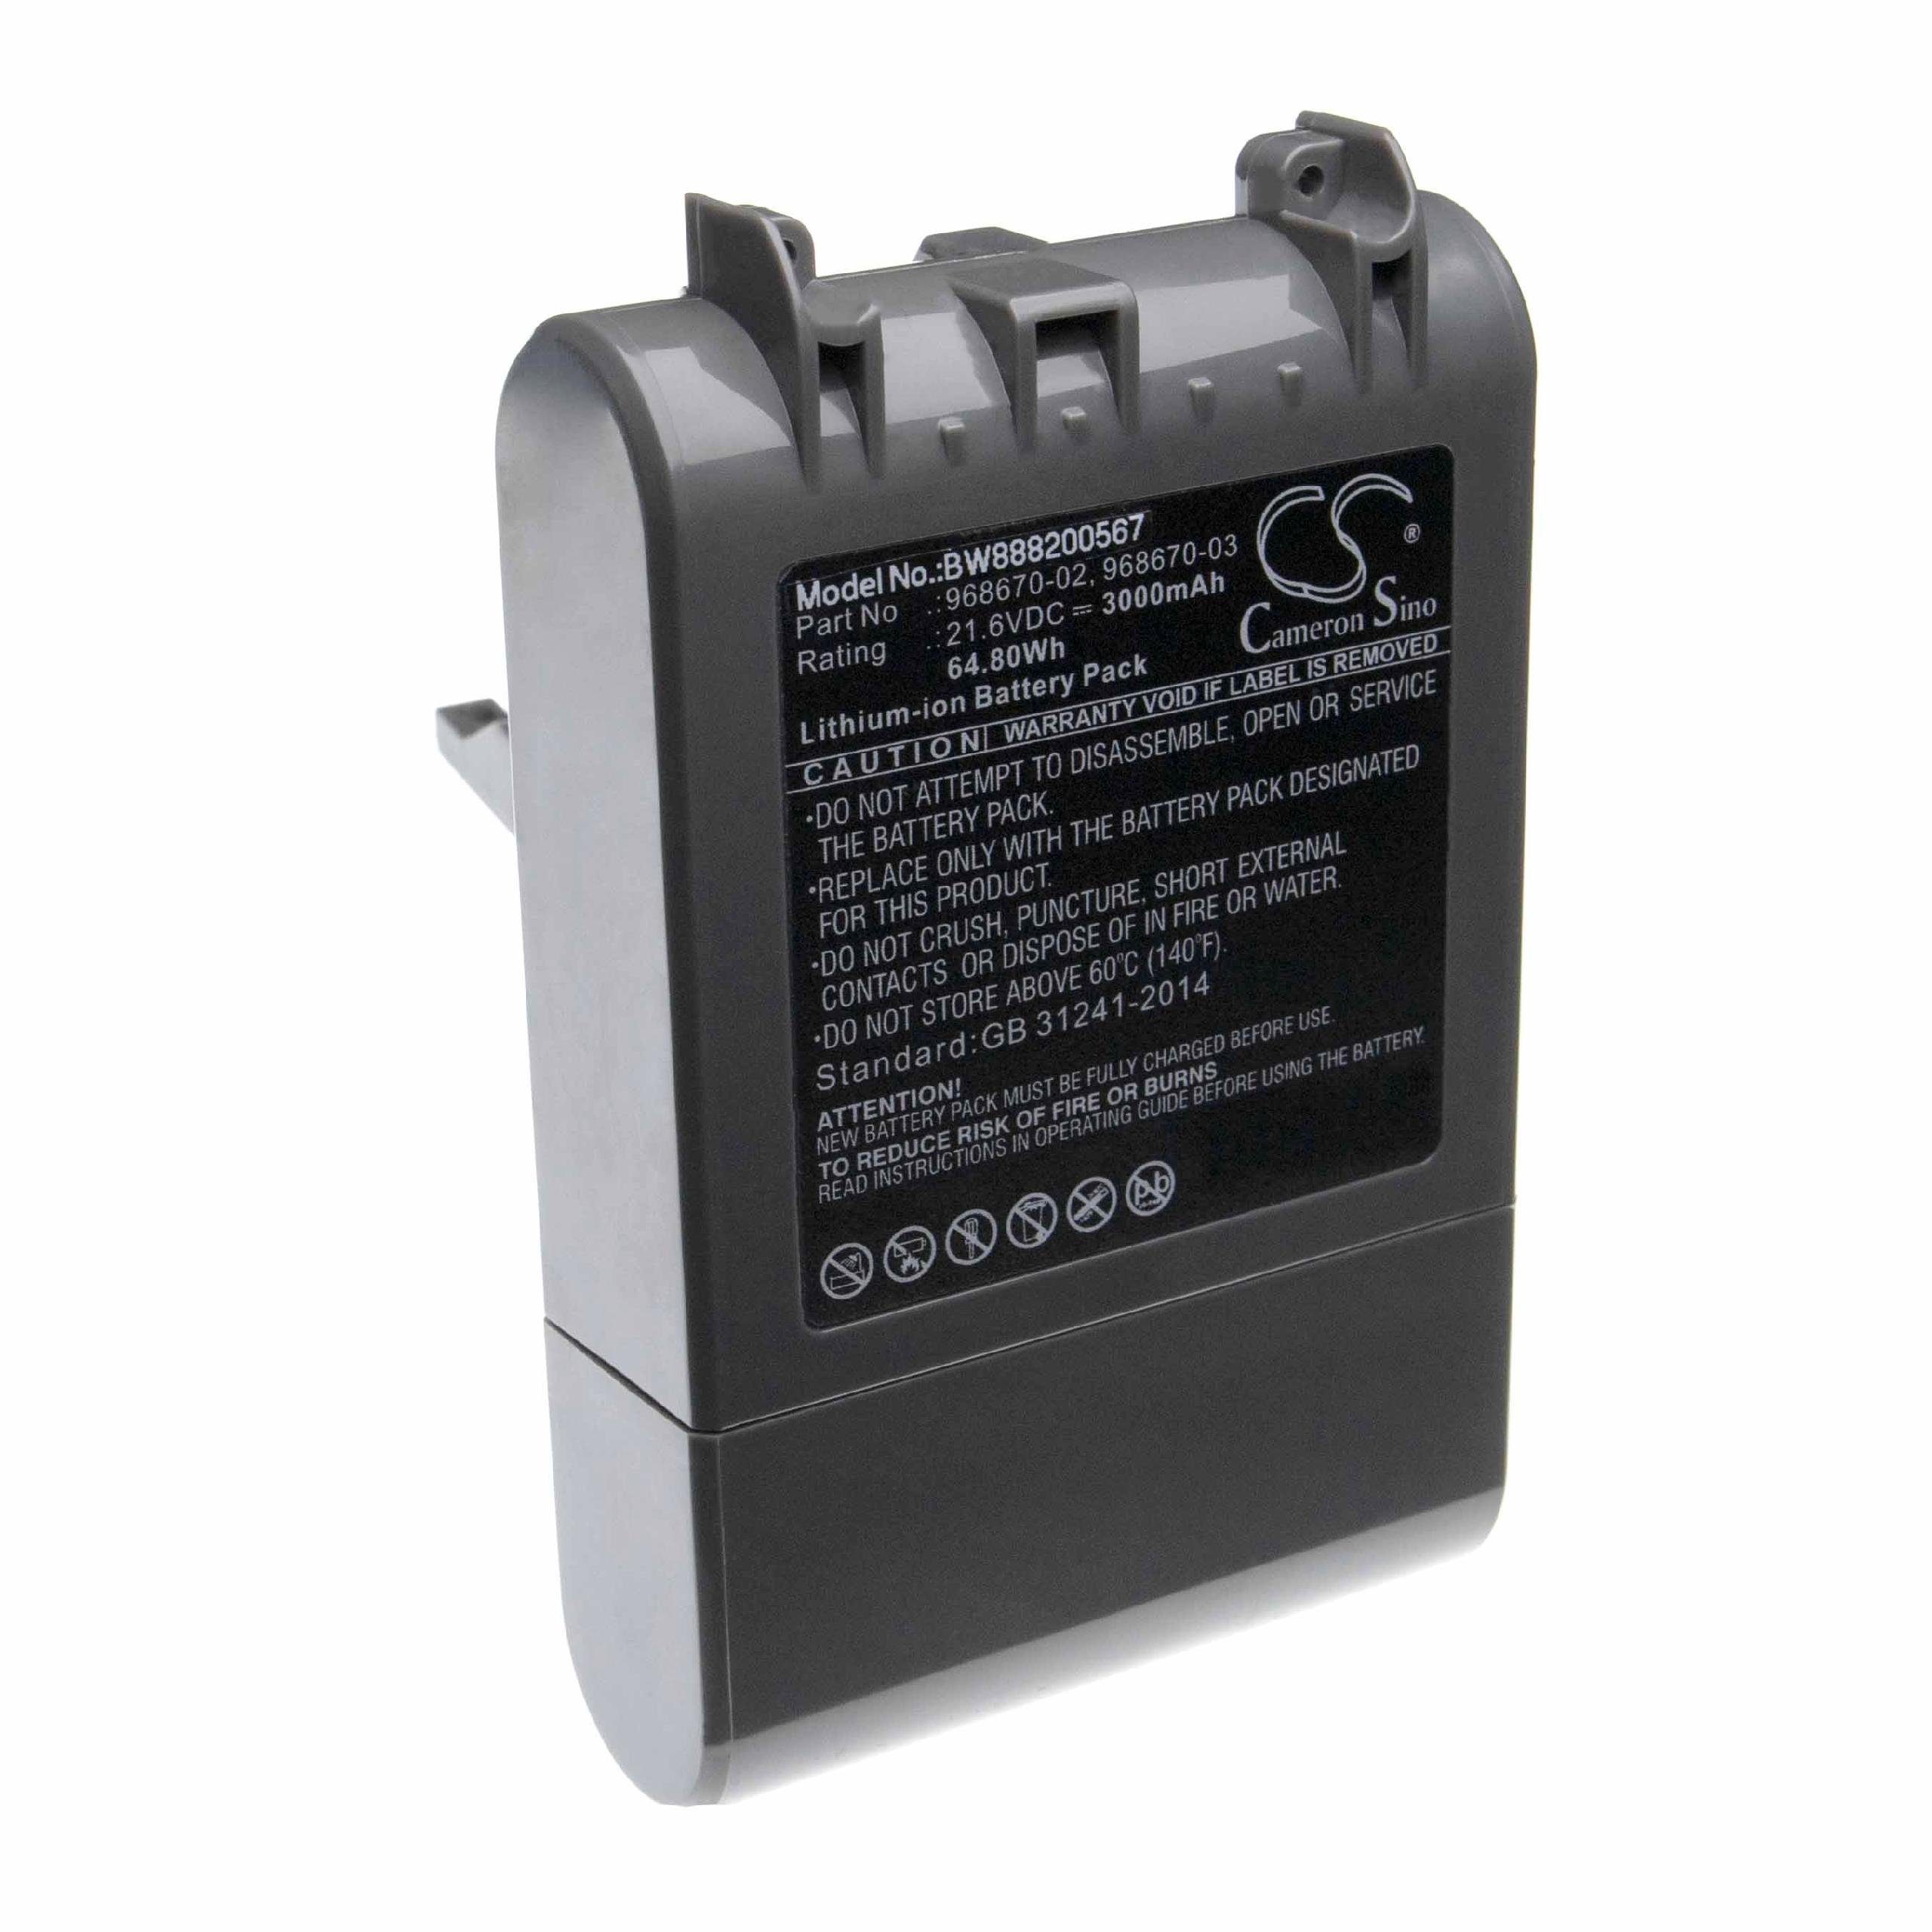 Batterie remplace Dyson 968670-03, 968670-02 pour aspirateur - 3000mAh 21,6V Li-ion